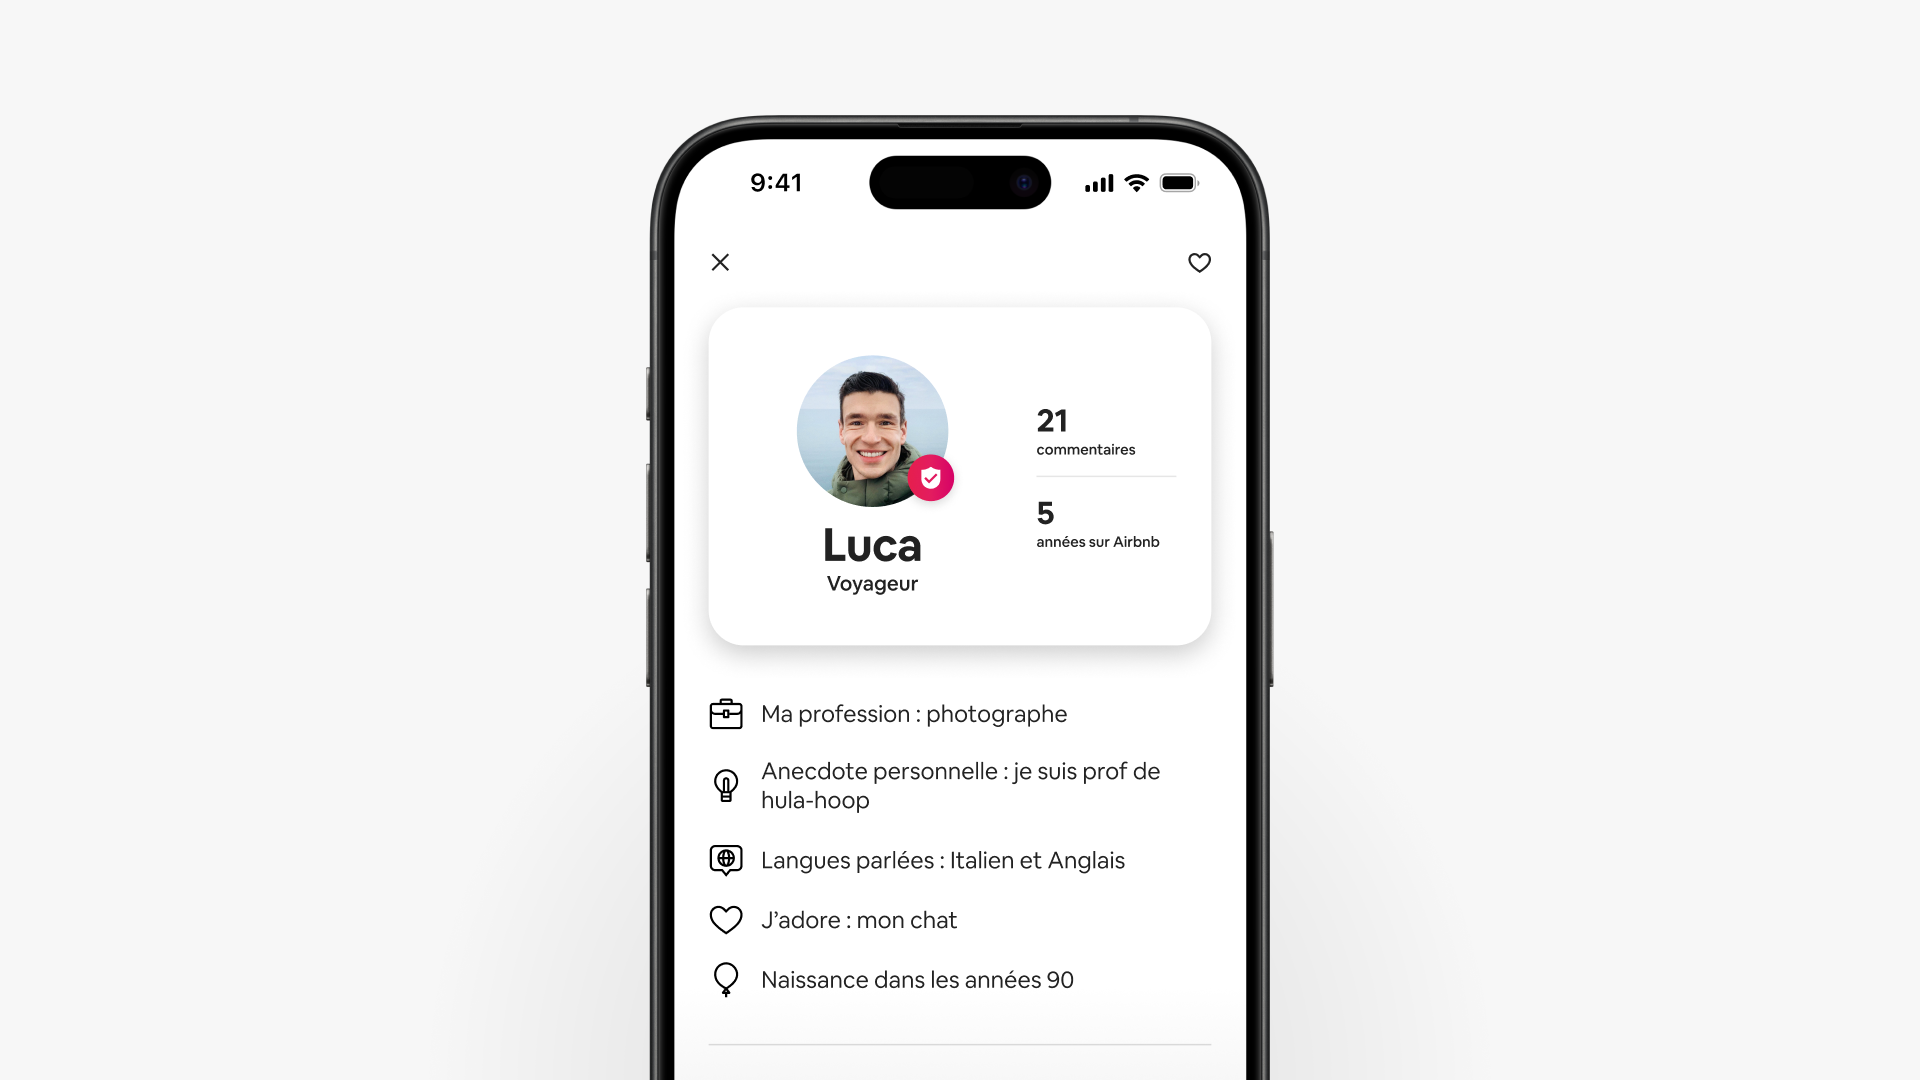 Une capture d'écran d'un téléphone portable affiche le profil de voyageur Airbnb amélioré de Luca, notamment ses commentaires et ses informations.